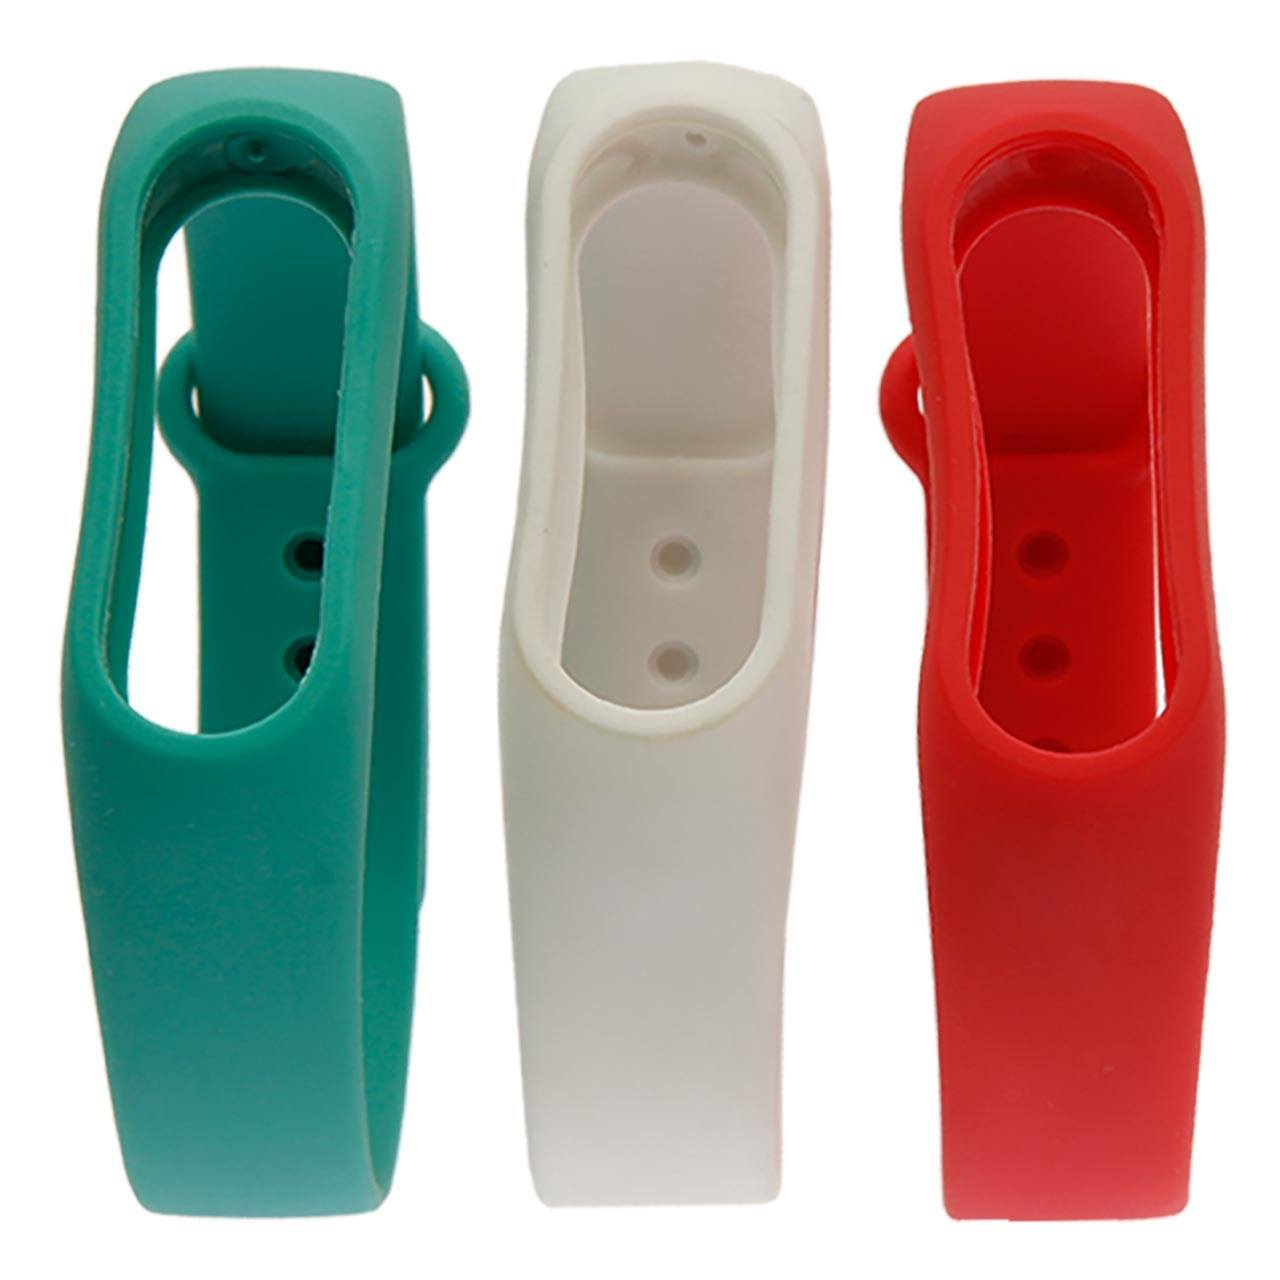 بند دستبند  - مچ بند هوشمند شیائومی‌-Xiaomi بند مچ بند هوشمند Mi Band 2 Silicone بسته3عددی- قرمز،سفید،سبزآبی